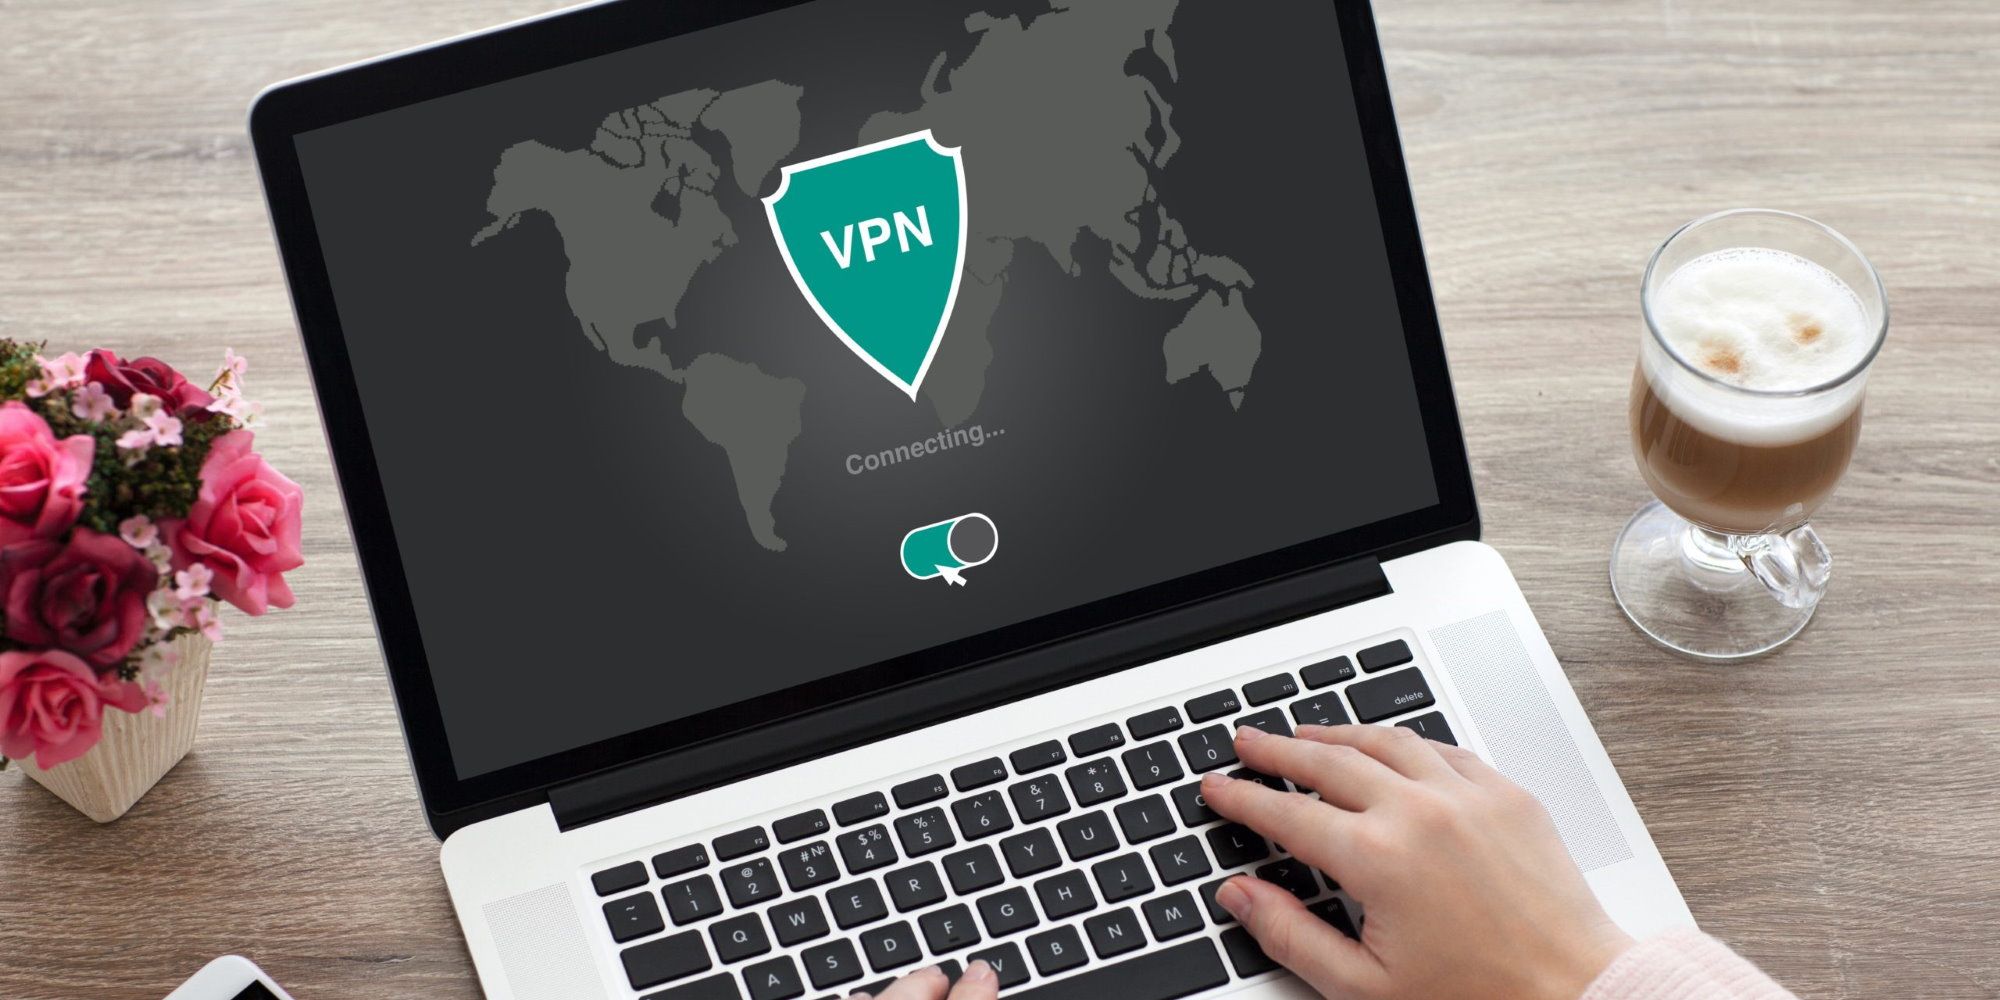 VPN - via Malwarebytes